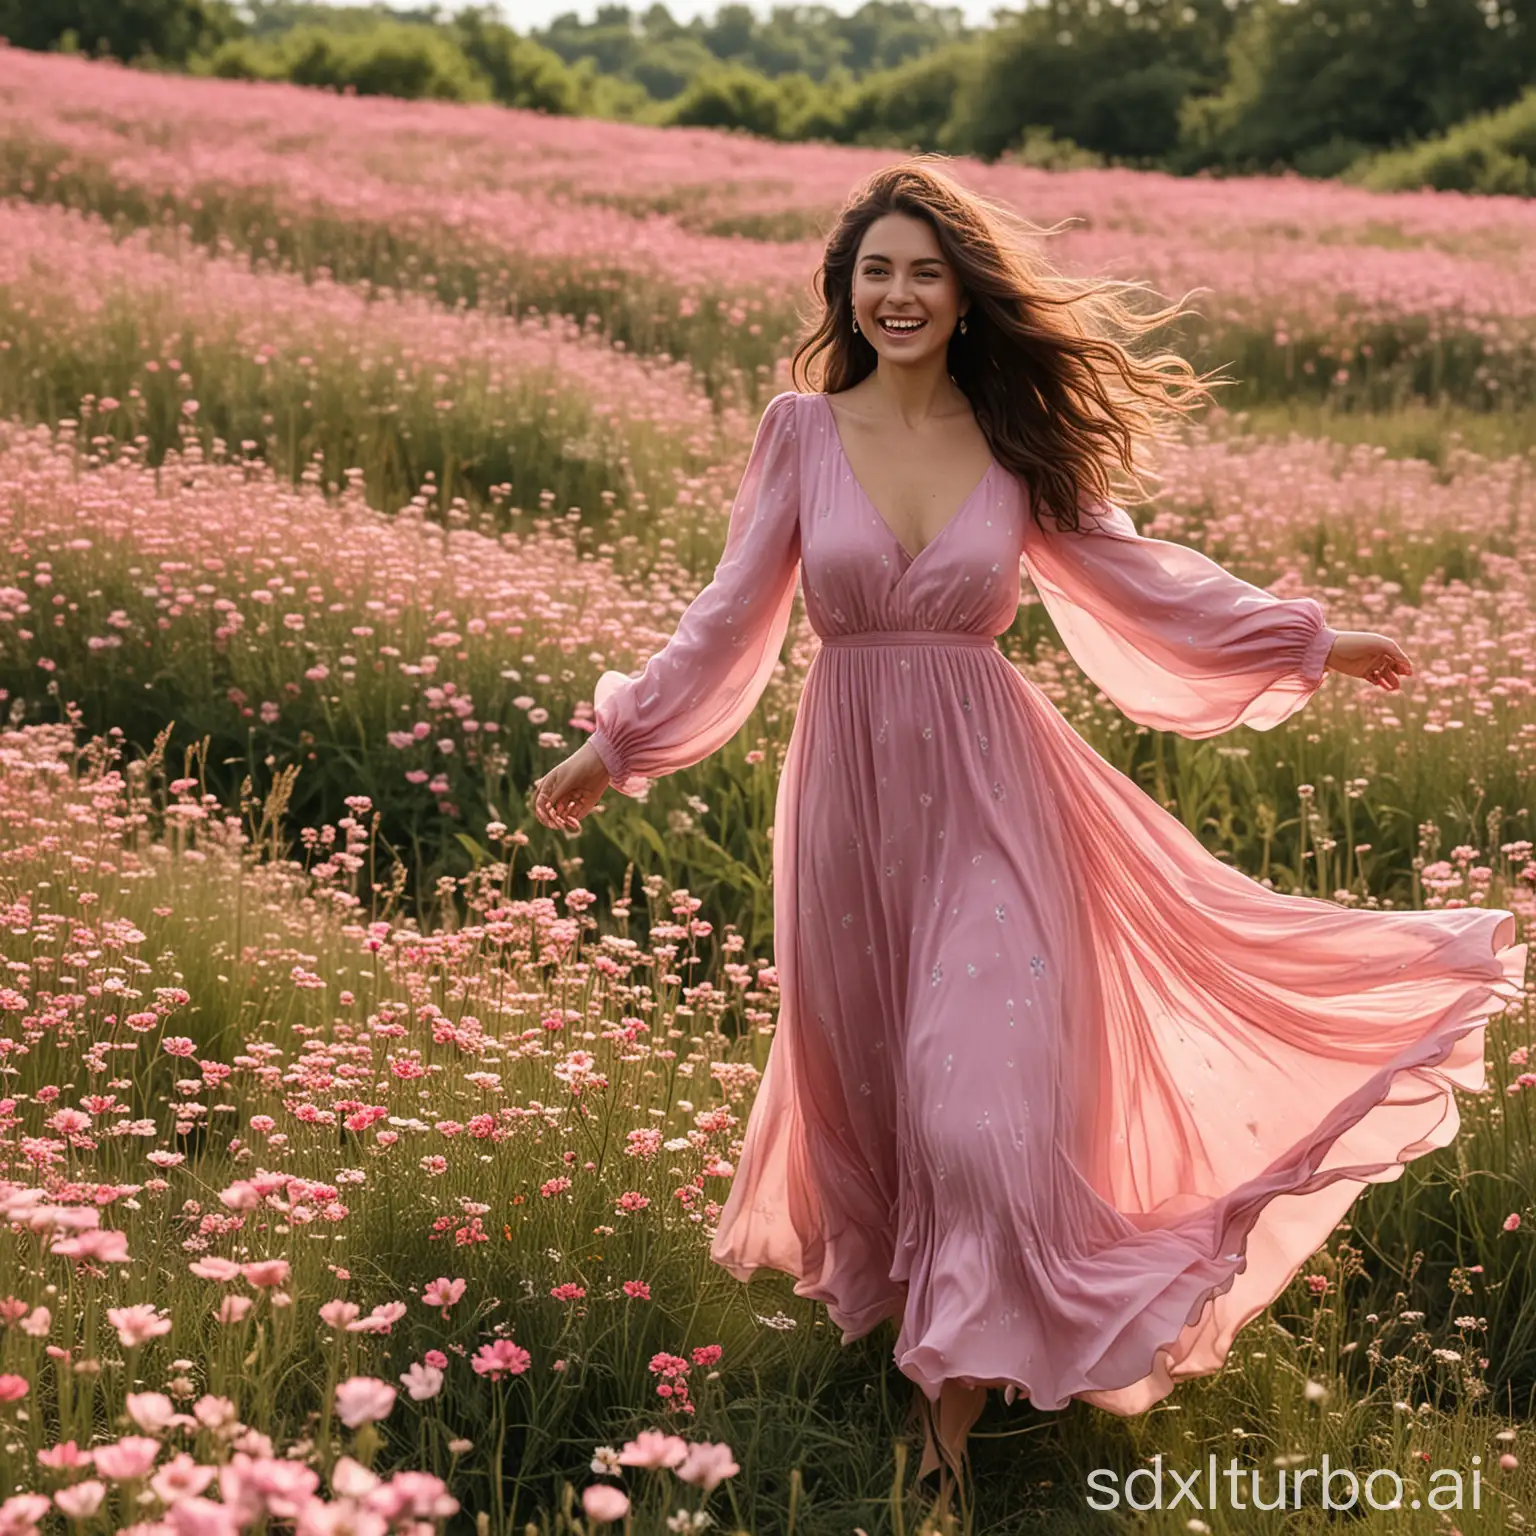 Happy-Woman-Walking-Through-Flowery-Field-in-Pink-Dress